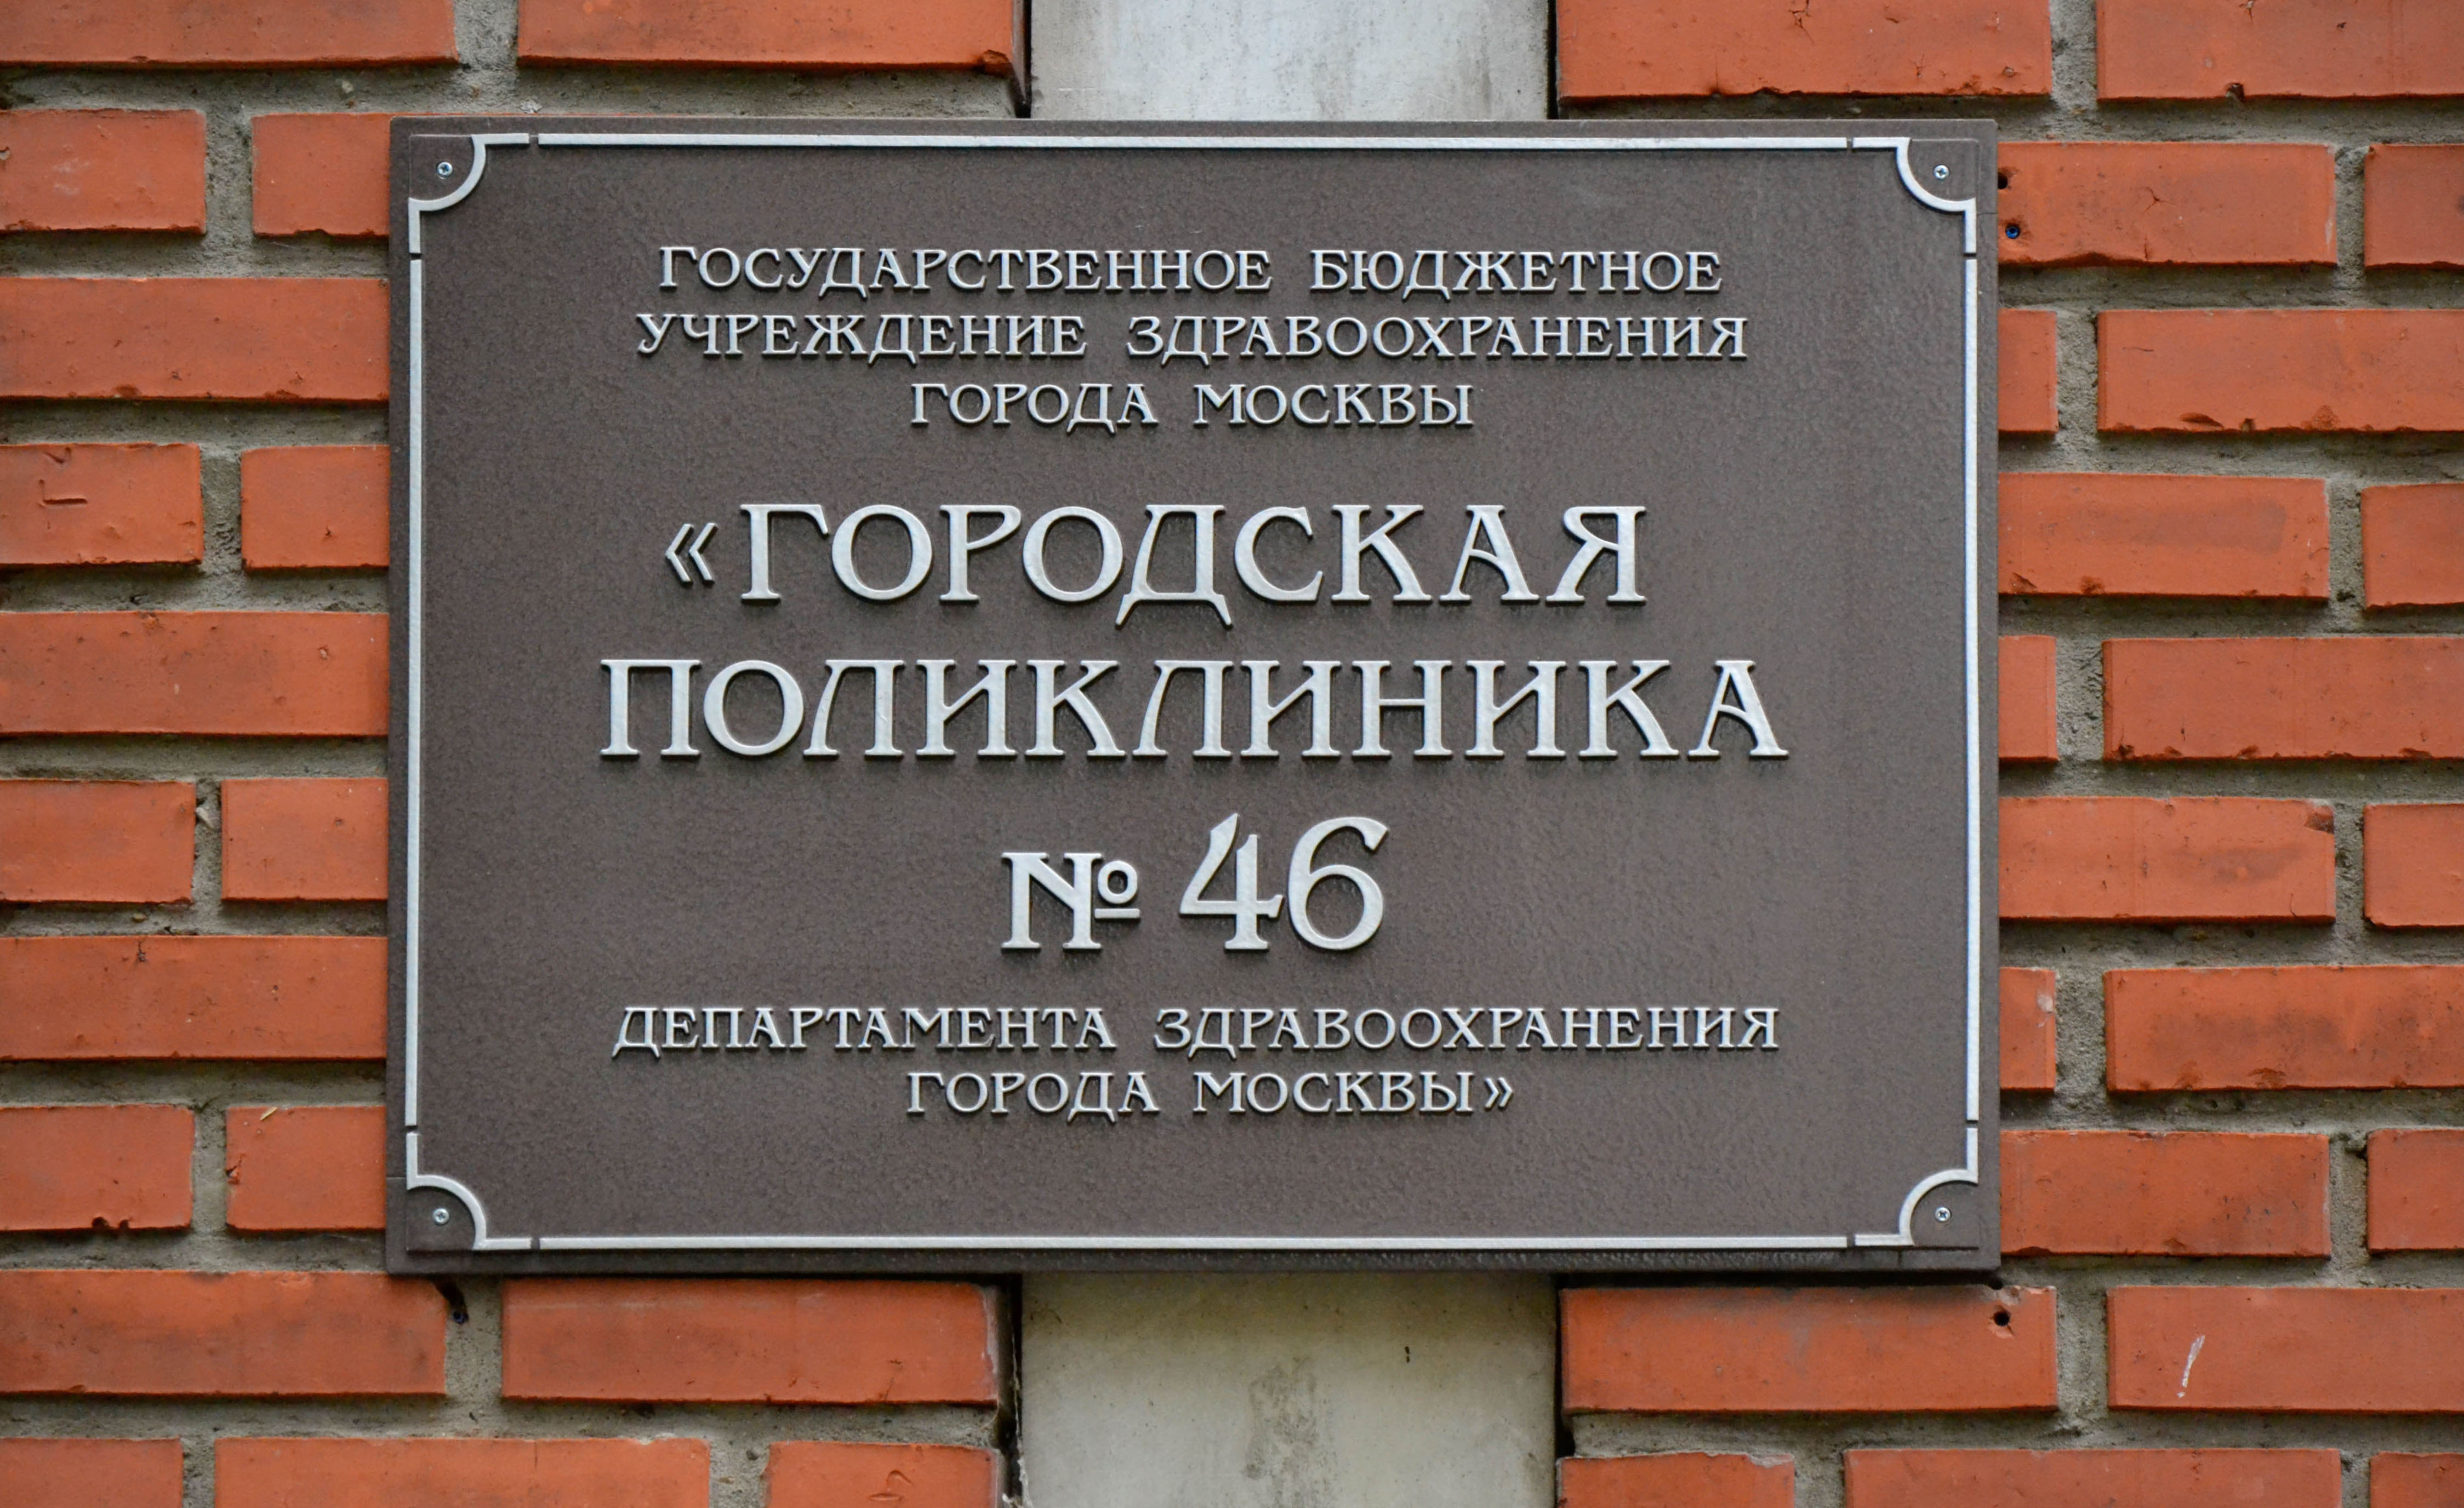 Городская поликлиника № 46 Департамента здравоохранения города Москвы